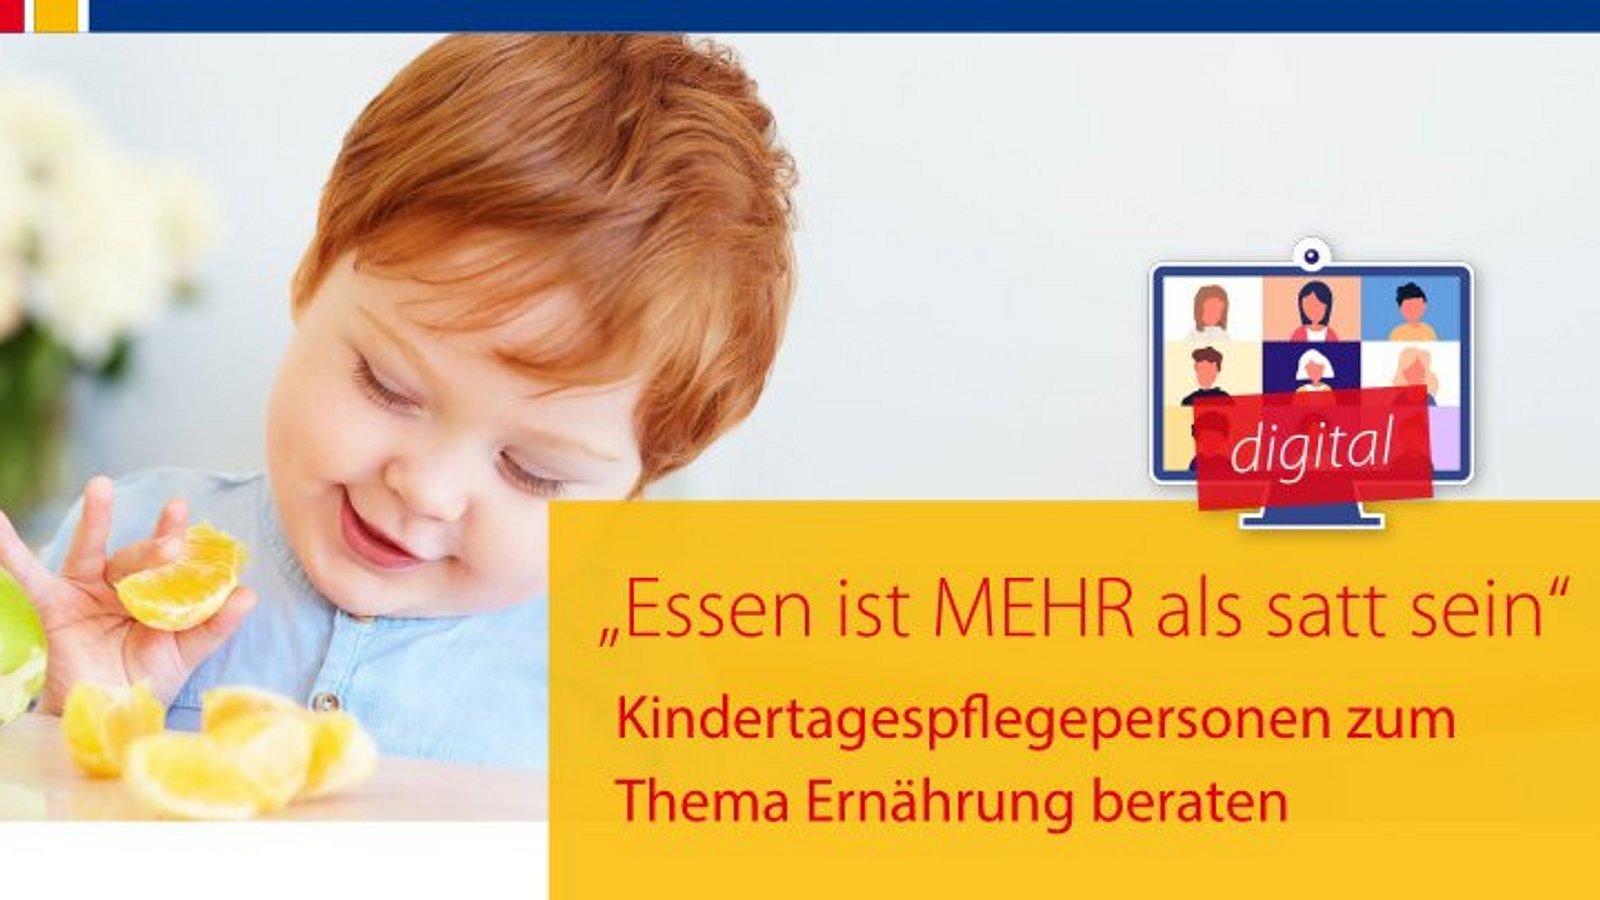 Flyerfoto des Fachtages "Essen ist MEHR als satt sein" des Bundesverbandes für Kindertagespflege am 1. Juli 2022